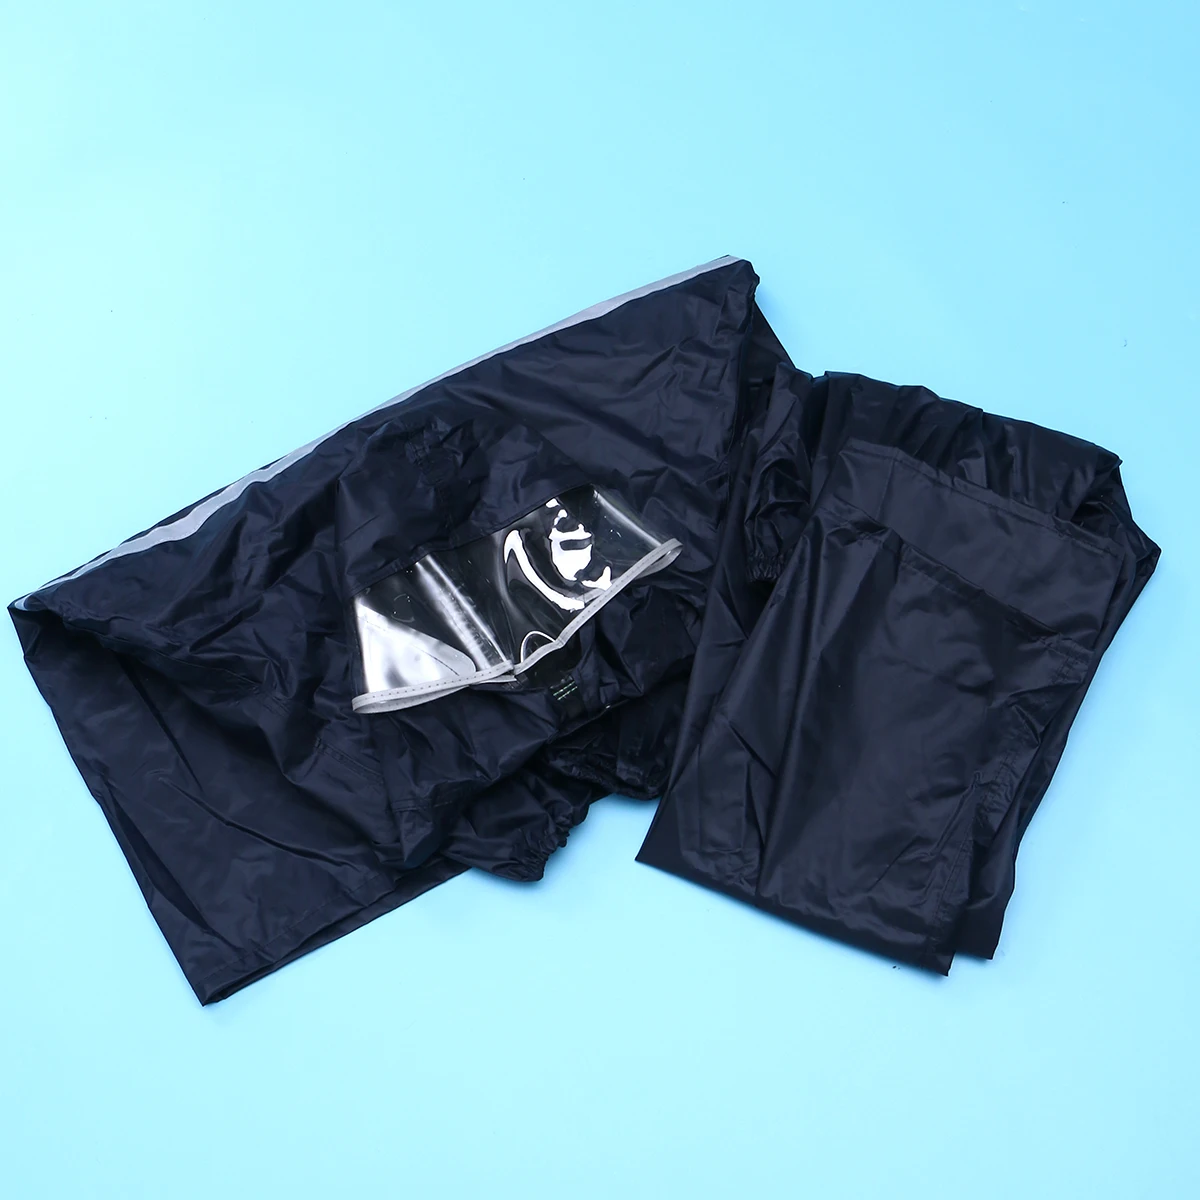 Утепленный дождевик из двух предметов со светоотражающими полосками, размер L-XXXL, моторный дождевик для велопрогулок дождевик; непромокаемые штаны для взрослых мужчин и женщин